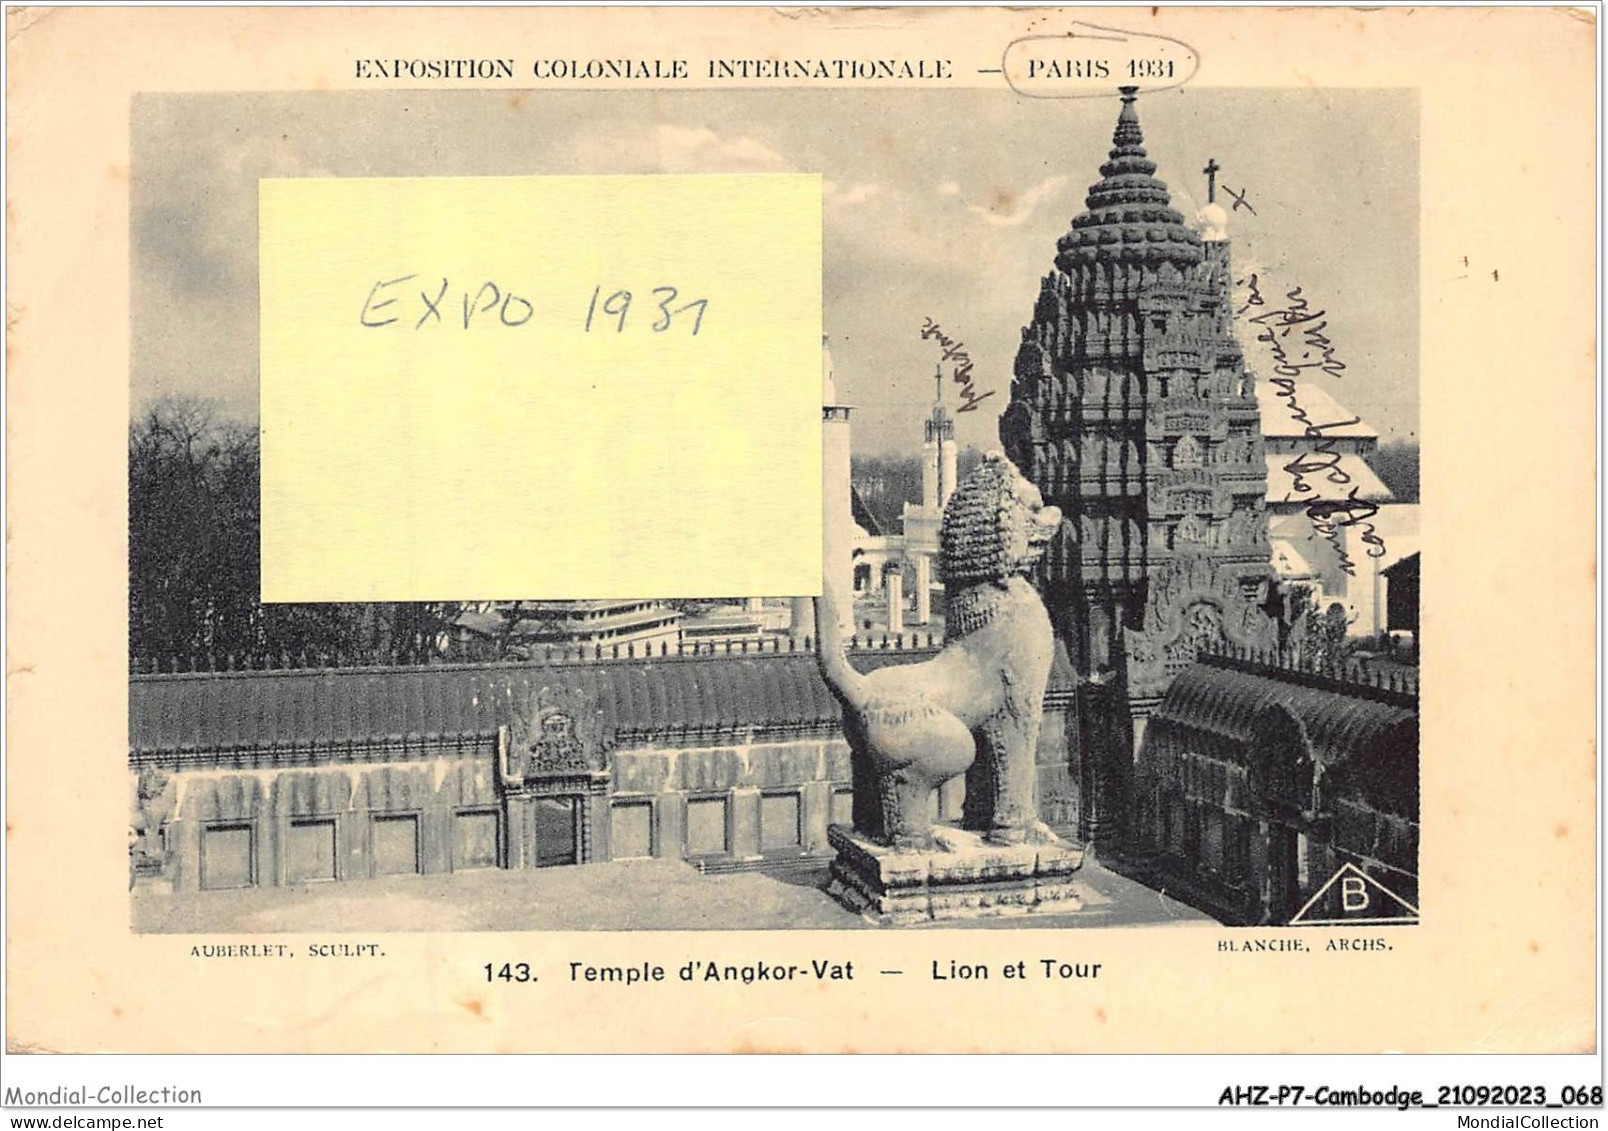 AHZP7-CAMBODGE-0630 - EXPOSITION COLONIALE INTERNATIONALE - PARIS 1931 - TEMPLE D'ANGKOR-VAT - LION ET TOUR - Kambodscha